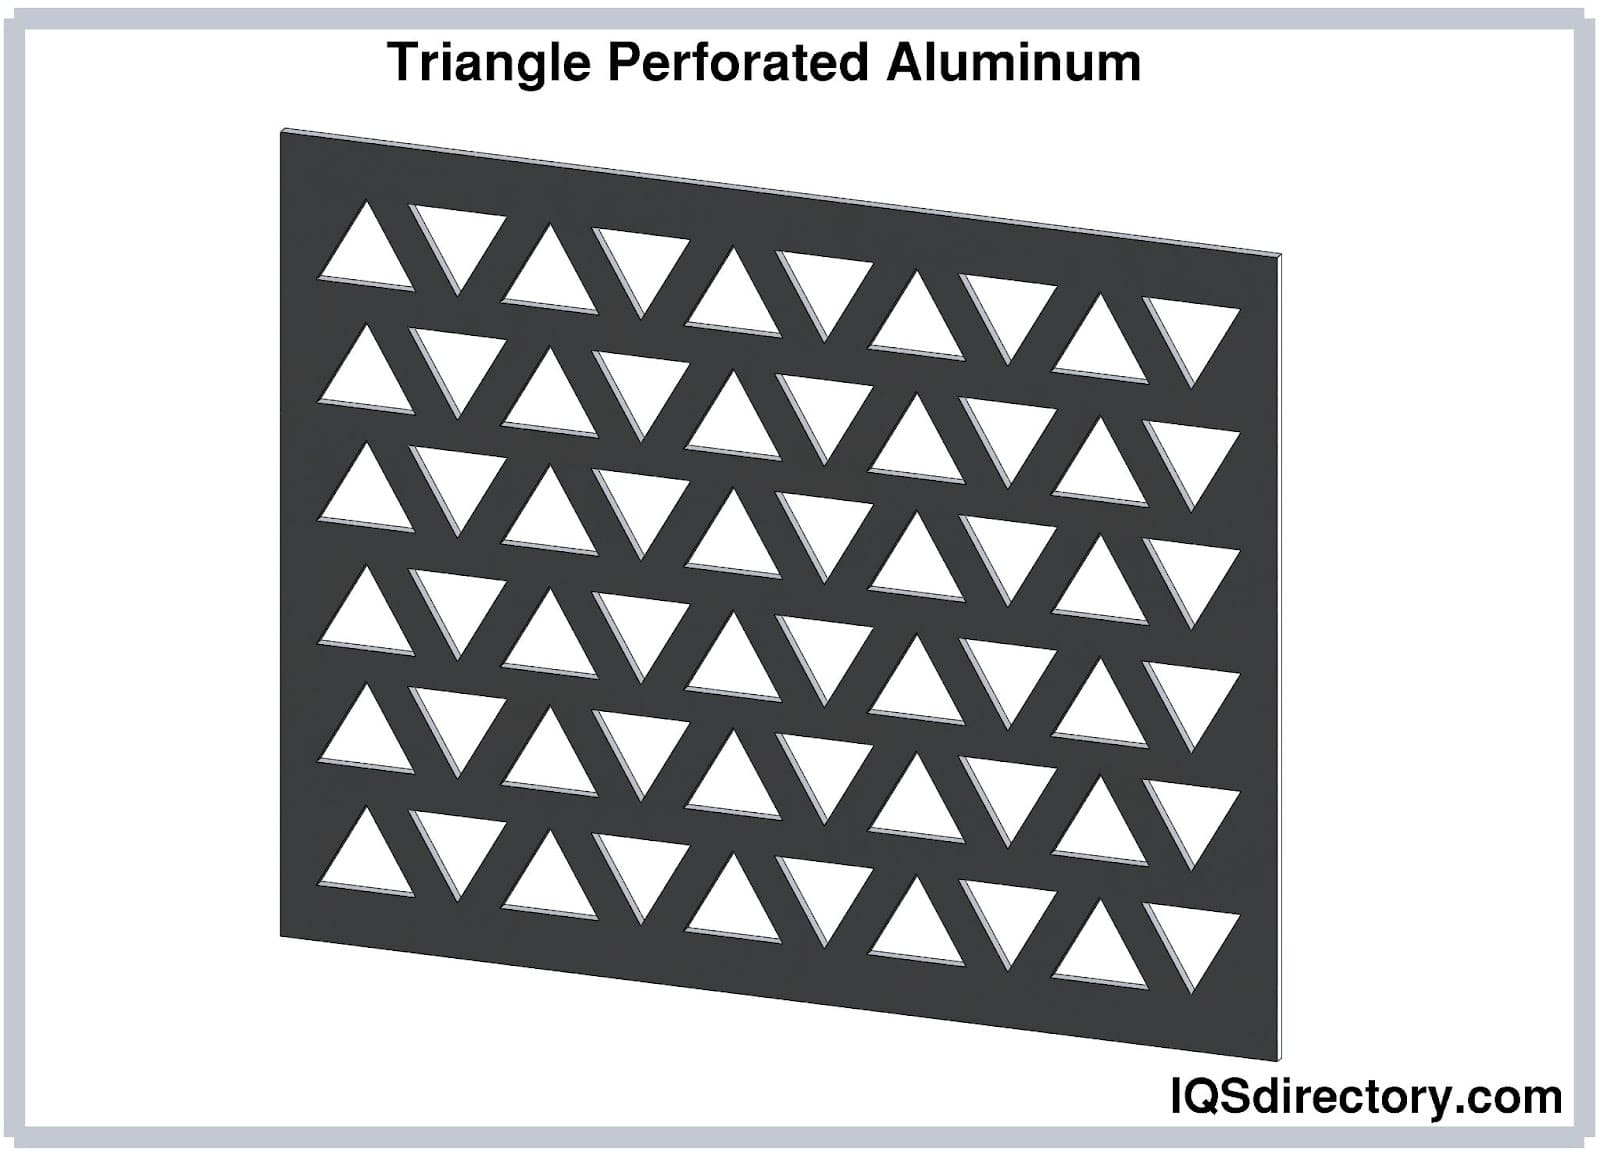 Triangle Perforated Aluminum